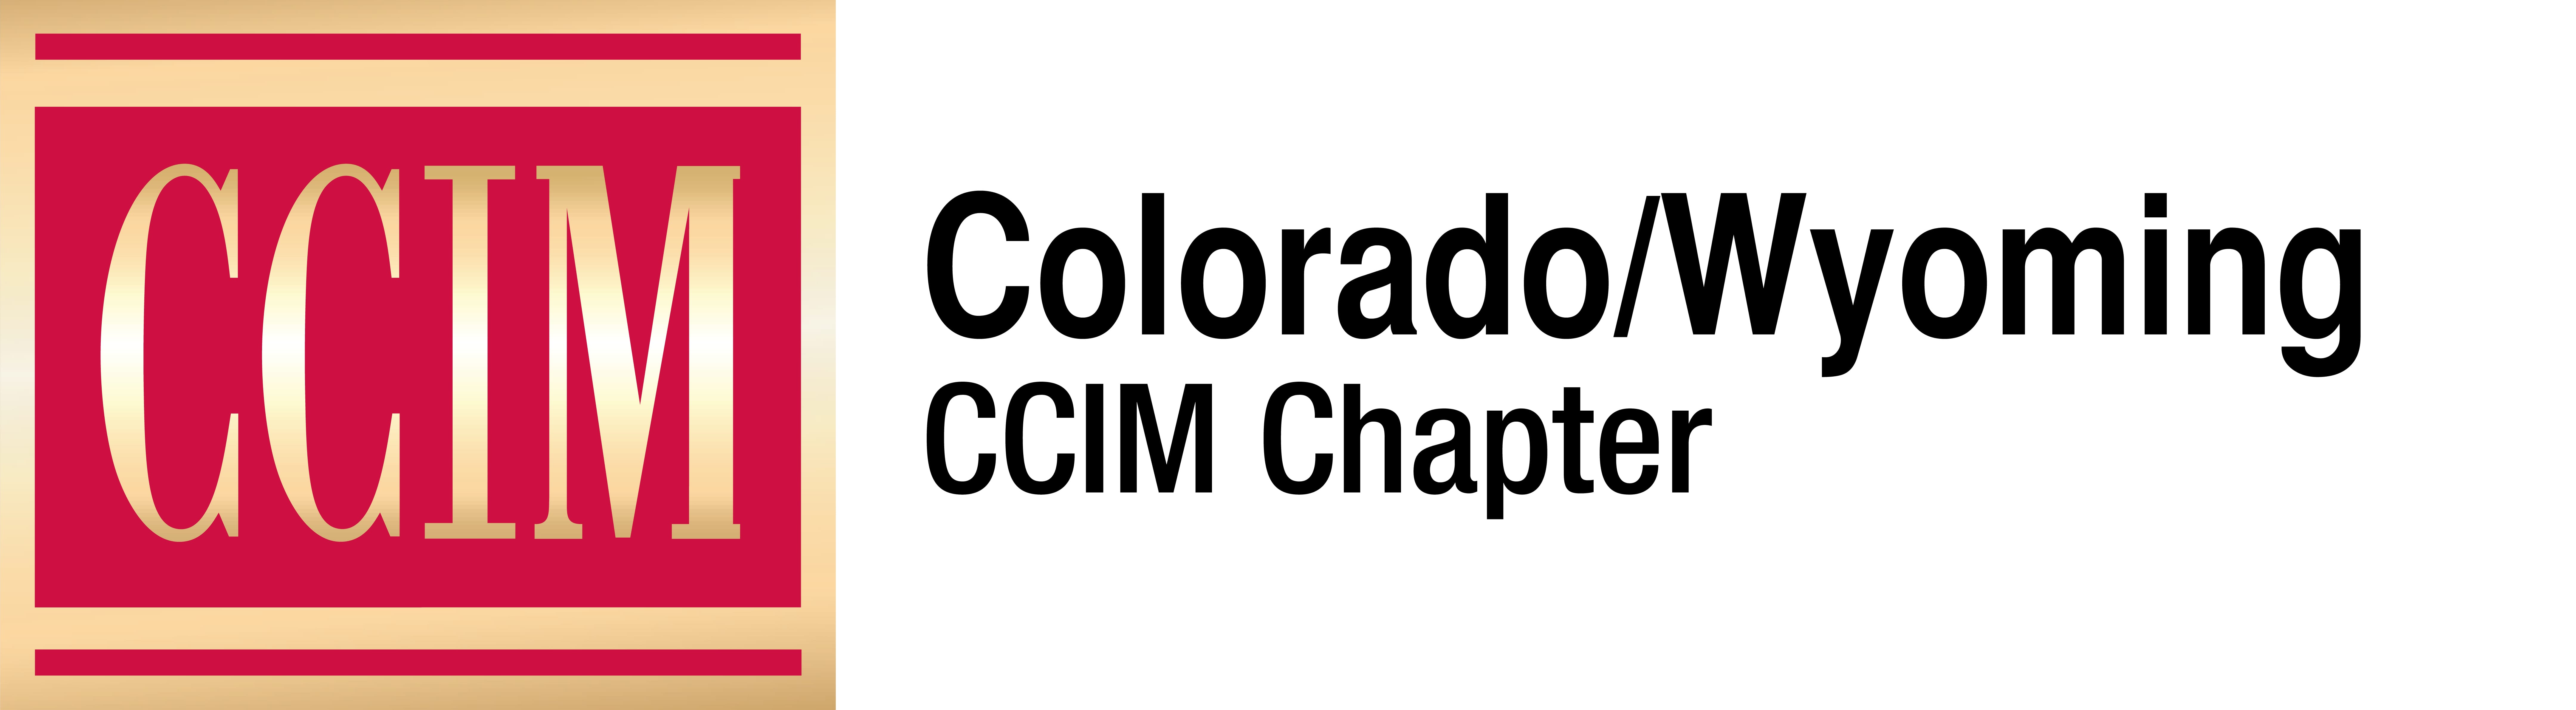 Ccim Logo - ccim-logo-4-color-CO-WY - ULI Colorado